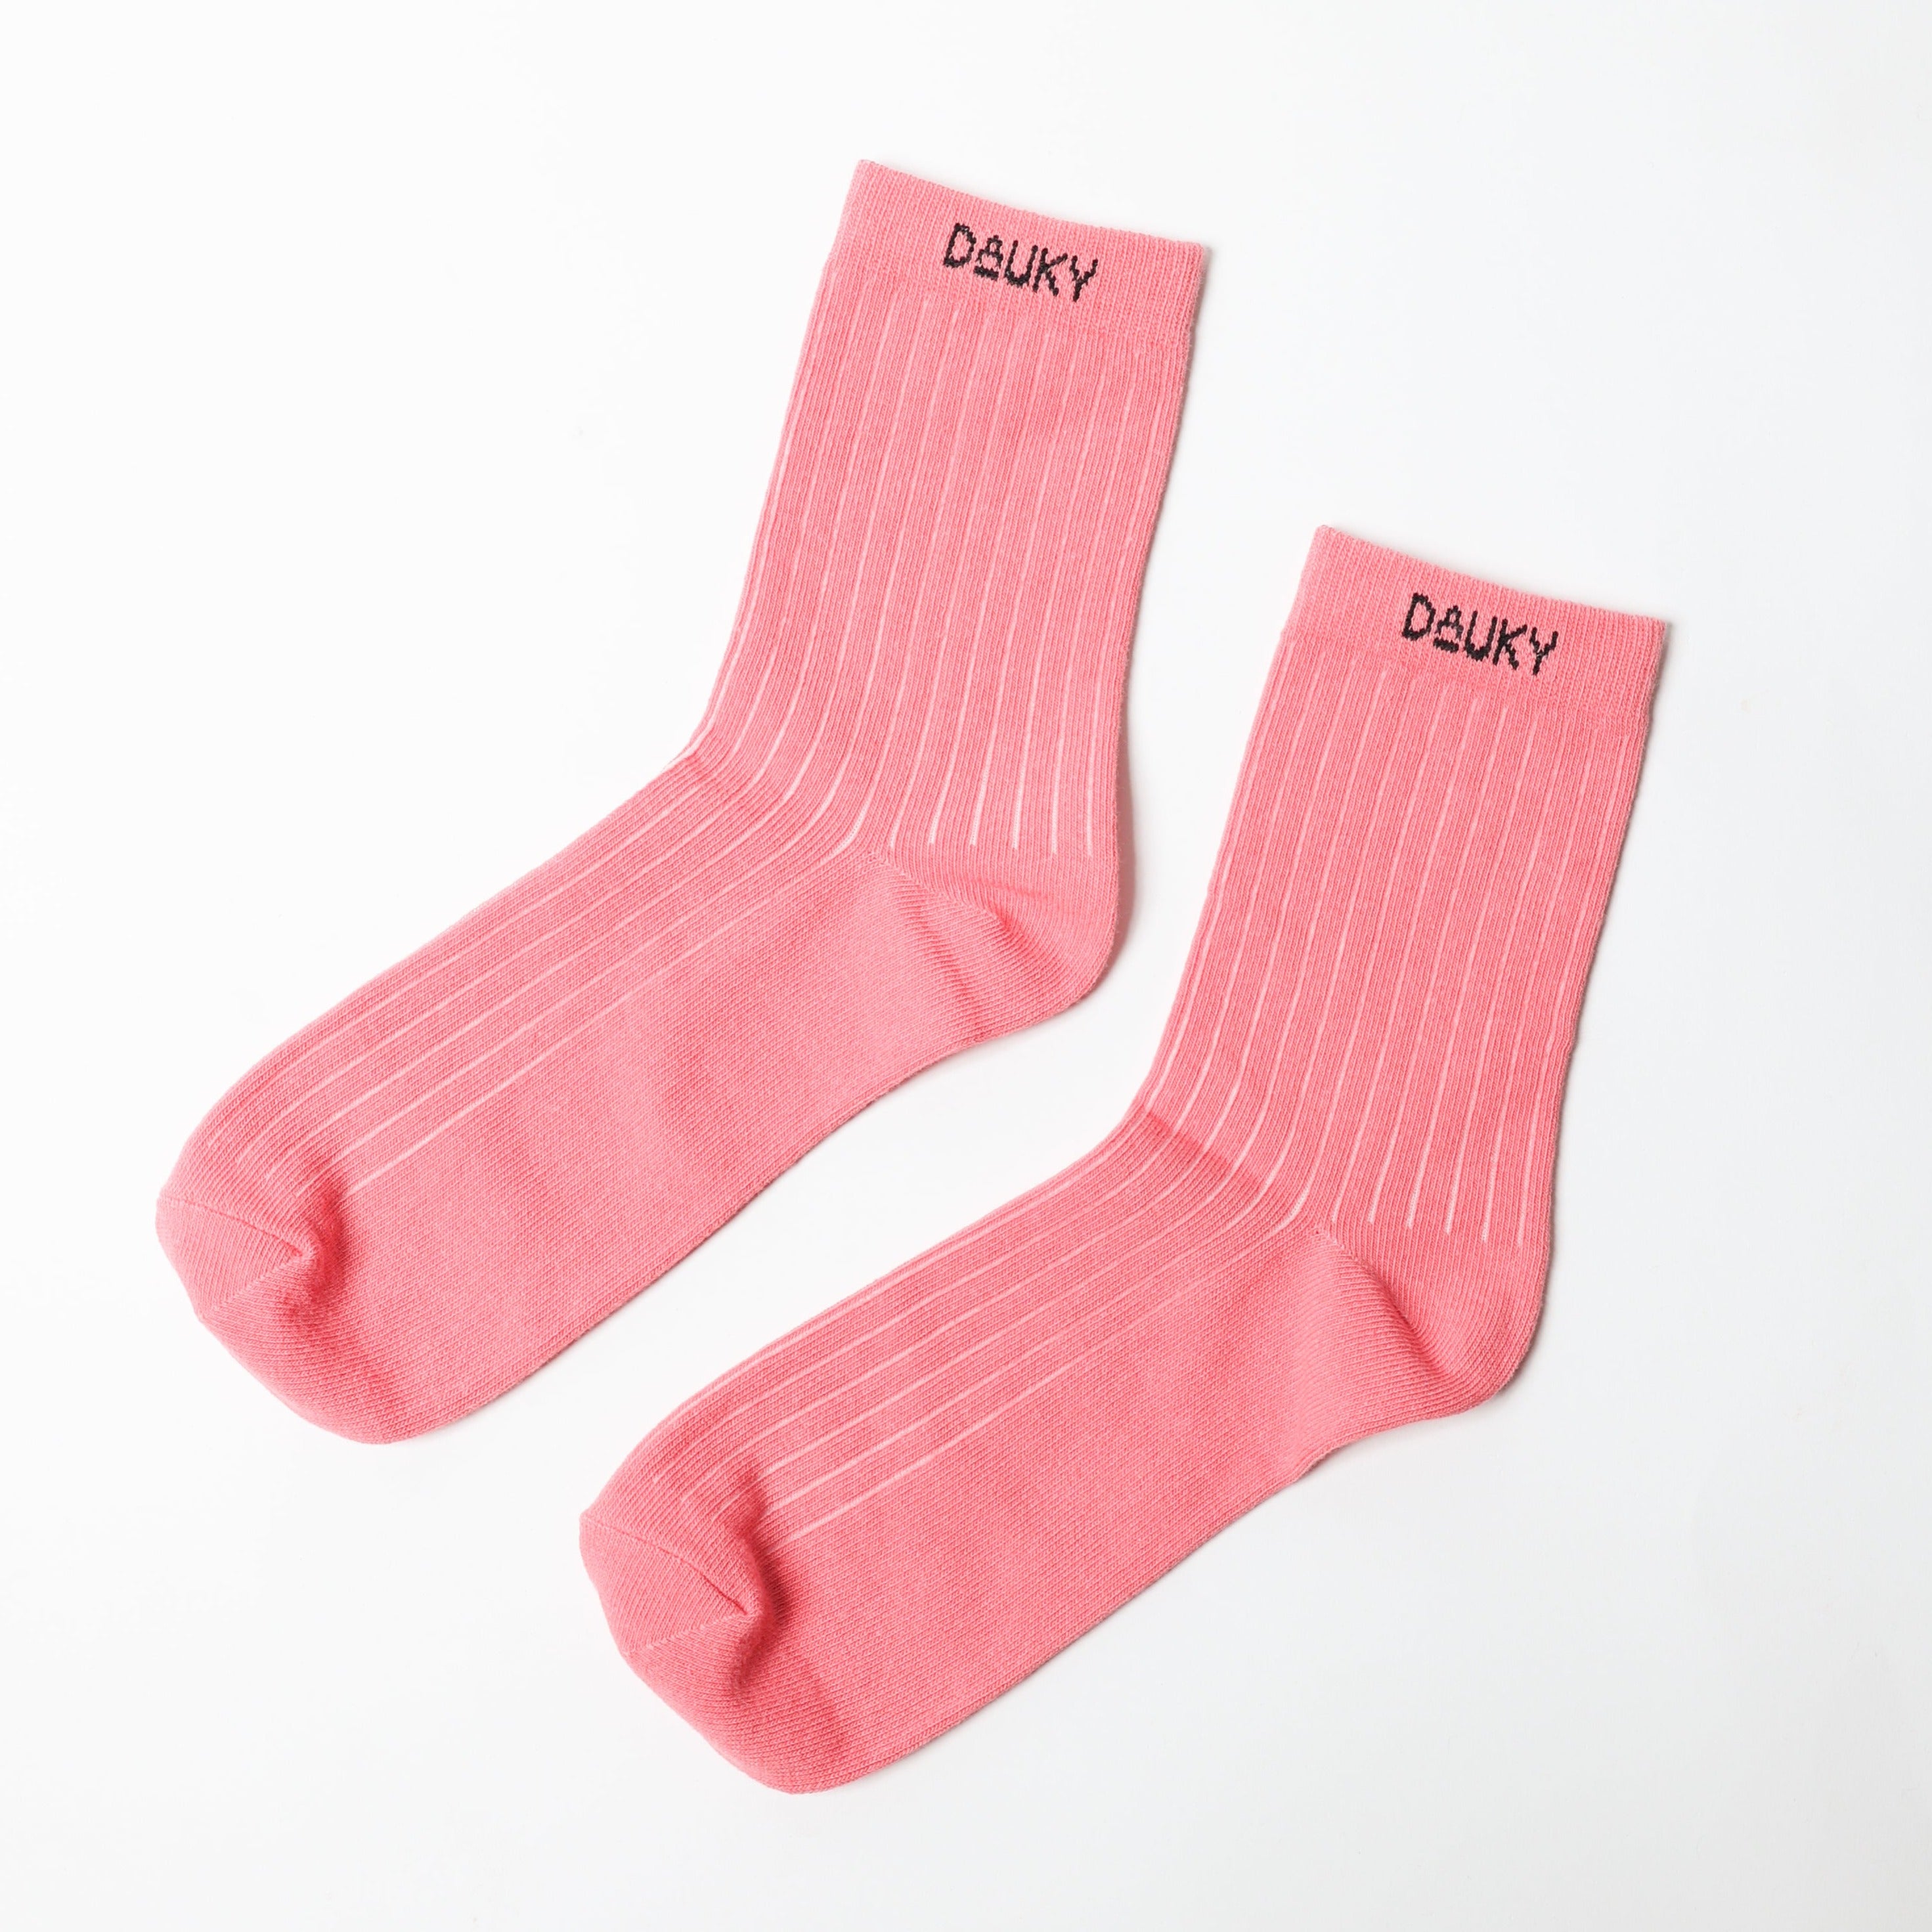 Dauky Kaos kaki Basic Rib Socks - Pink